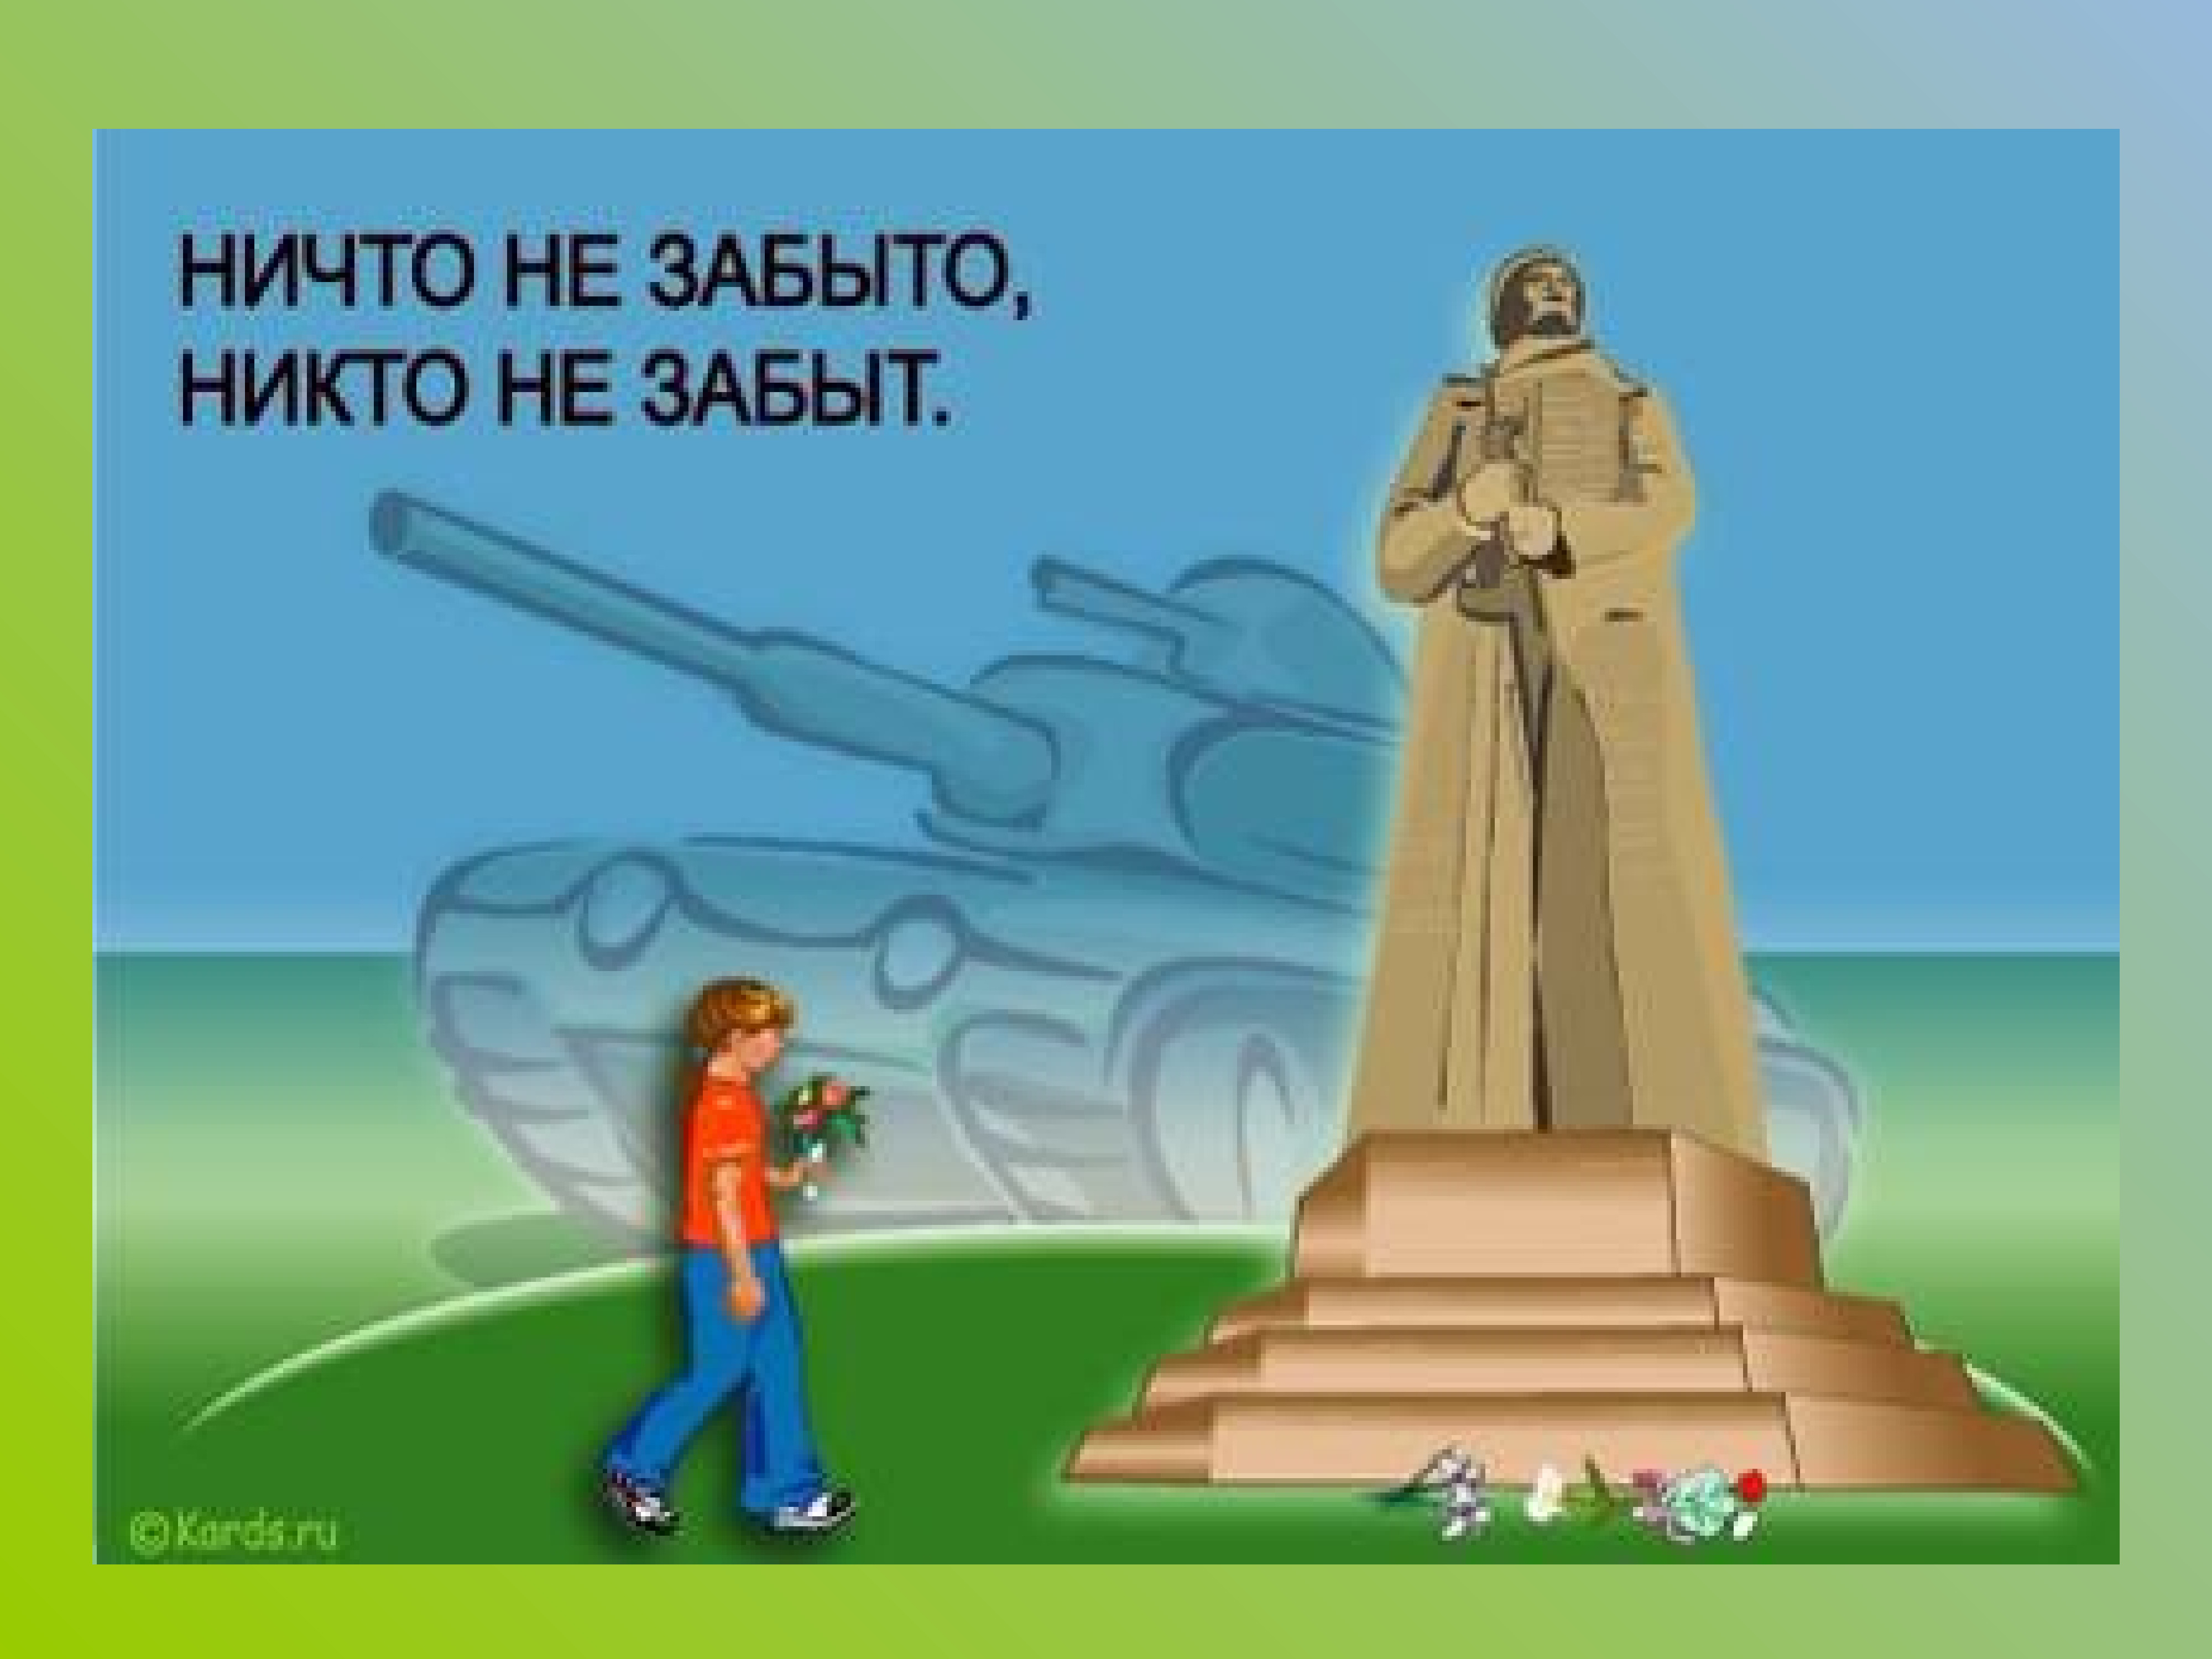 Памятник героям Великой Отечественной войны рисунок